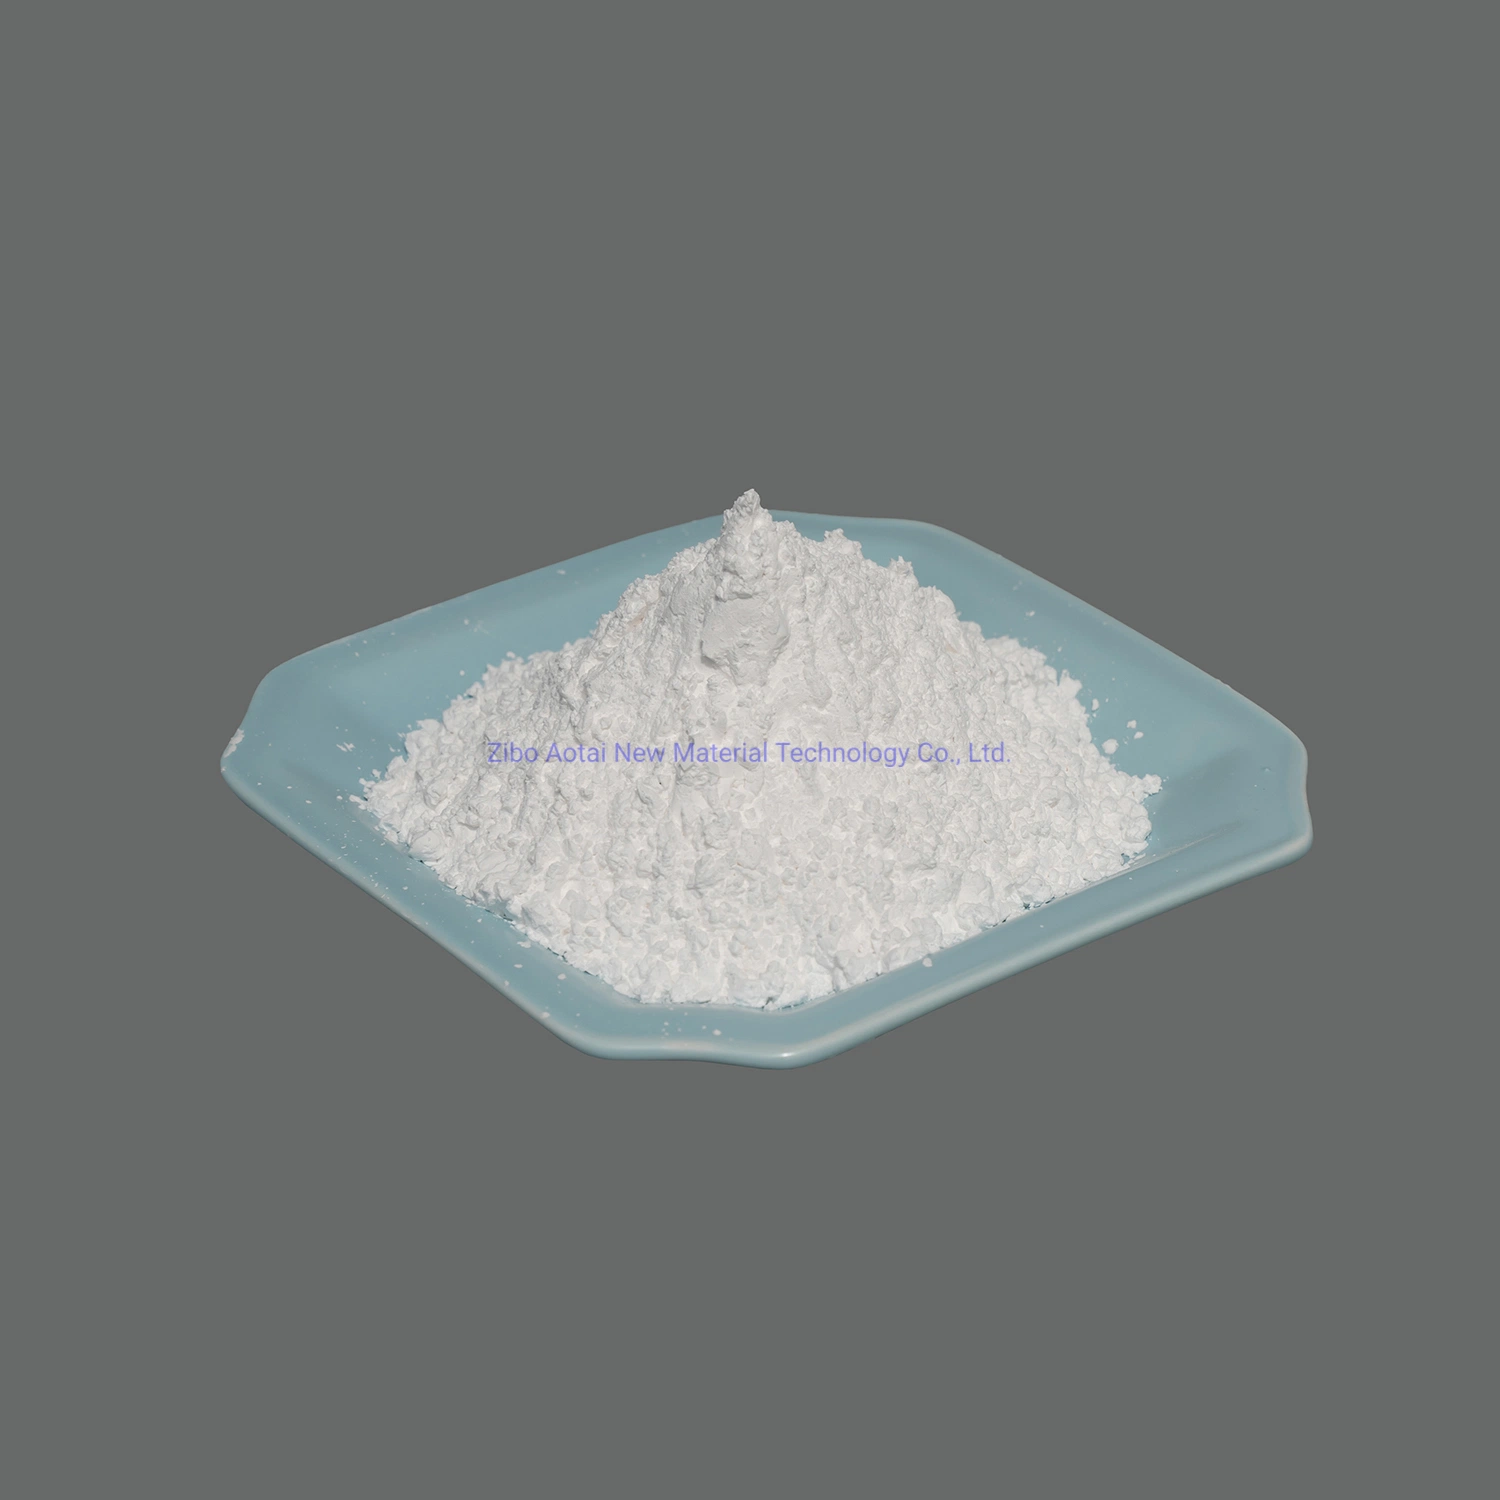 Aluminum Oxide CAS No 1344-28-1 White Calcined Alumina Oxide Powder for Ceramic, Refractory, Glaze with 99.5%